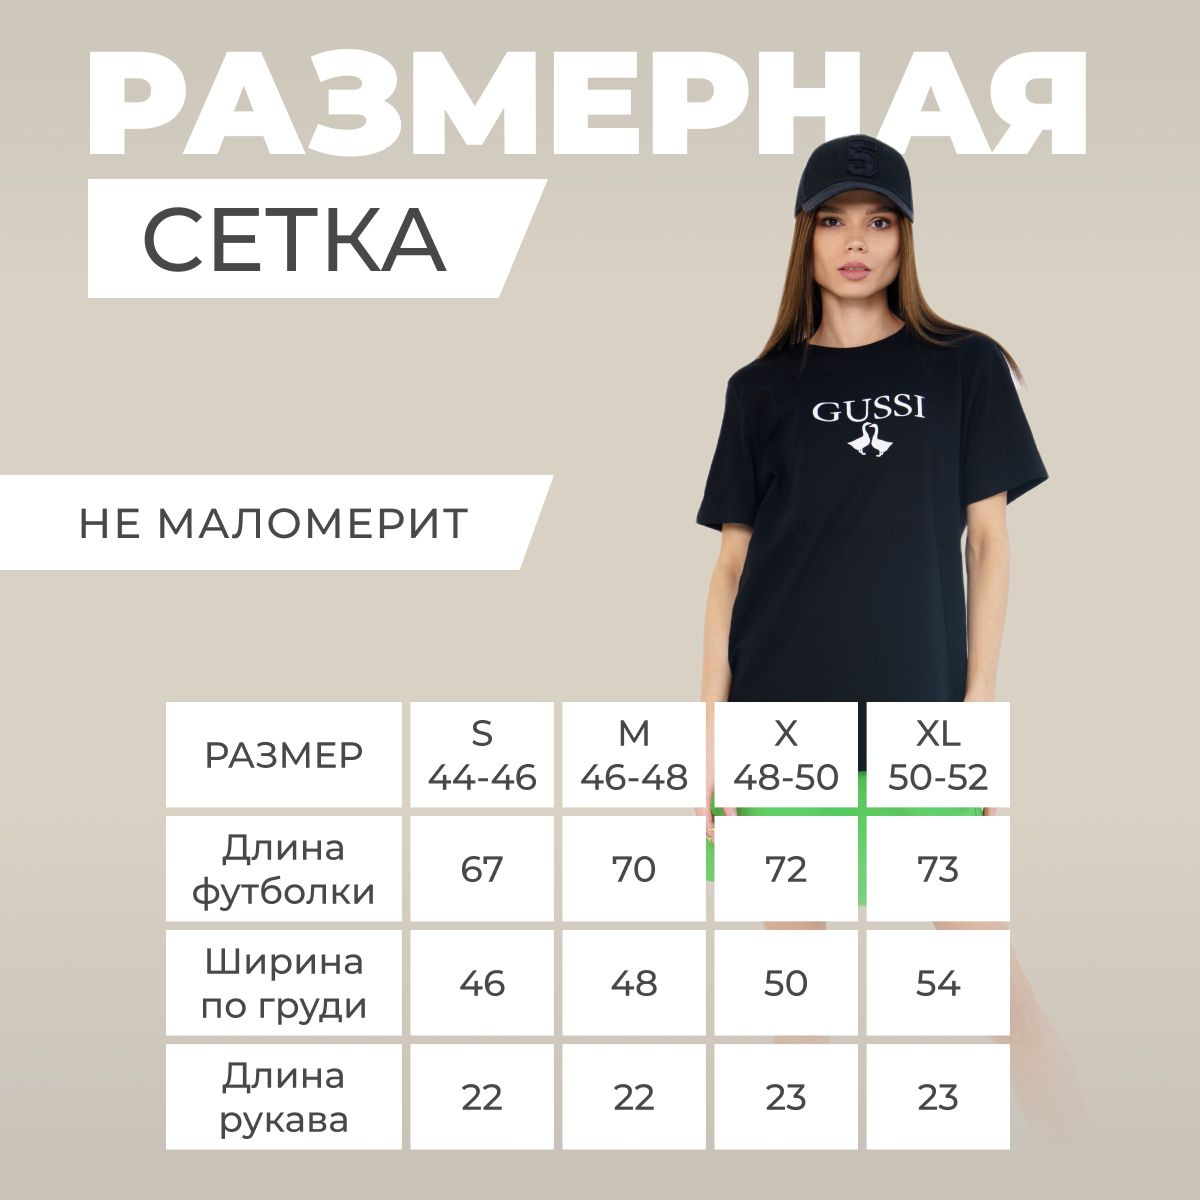 Размеры футболок соответствуют российским (не маломерит). Размерный ряд начинается от S и до XL (44-46, 46-48, 48-50, 50-52). Для стиля оверсайз, выбирайте футболку на 2 размера больше.